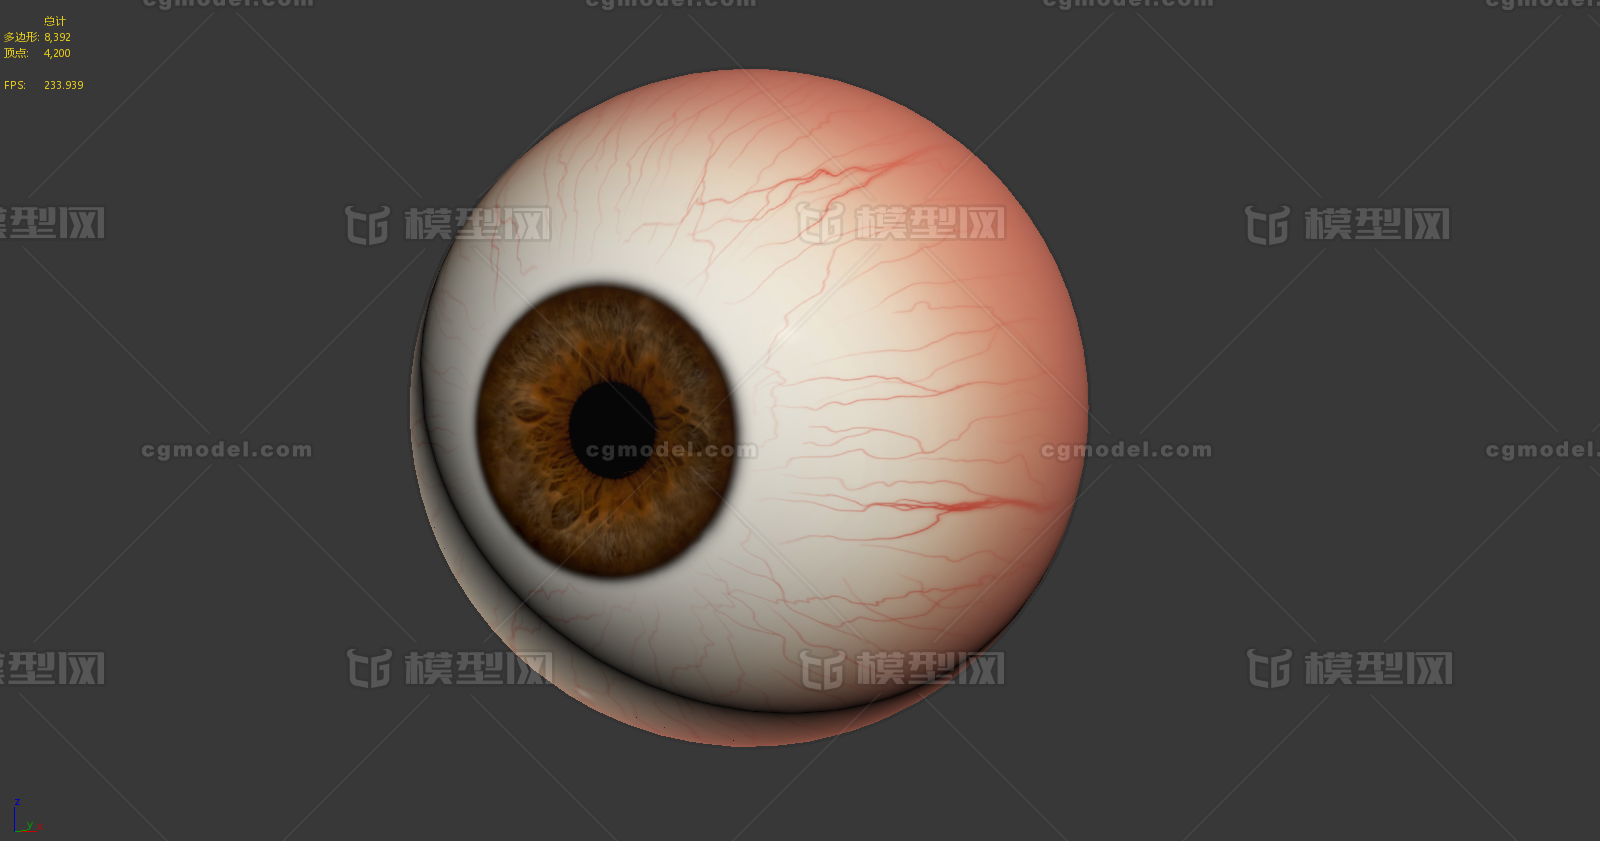 写实眼球眼睛医学眼睛眼球整体高清贴图eyeball眼球剖面眼解剖眼球 医疗解剖眼睛 Cg模型网 Cgmodel 三维设计师交流互动平台 专注多品类3d模型下载 原创作品分享 软件学习